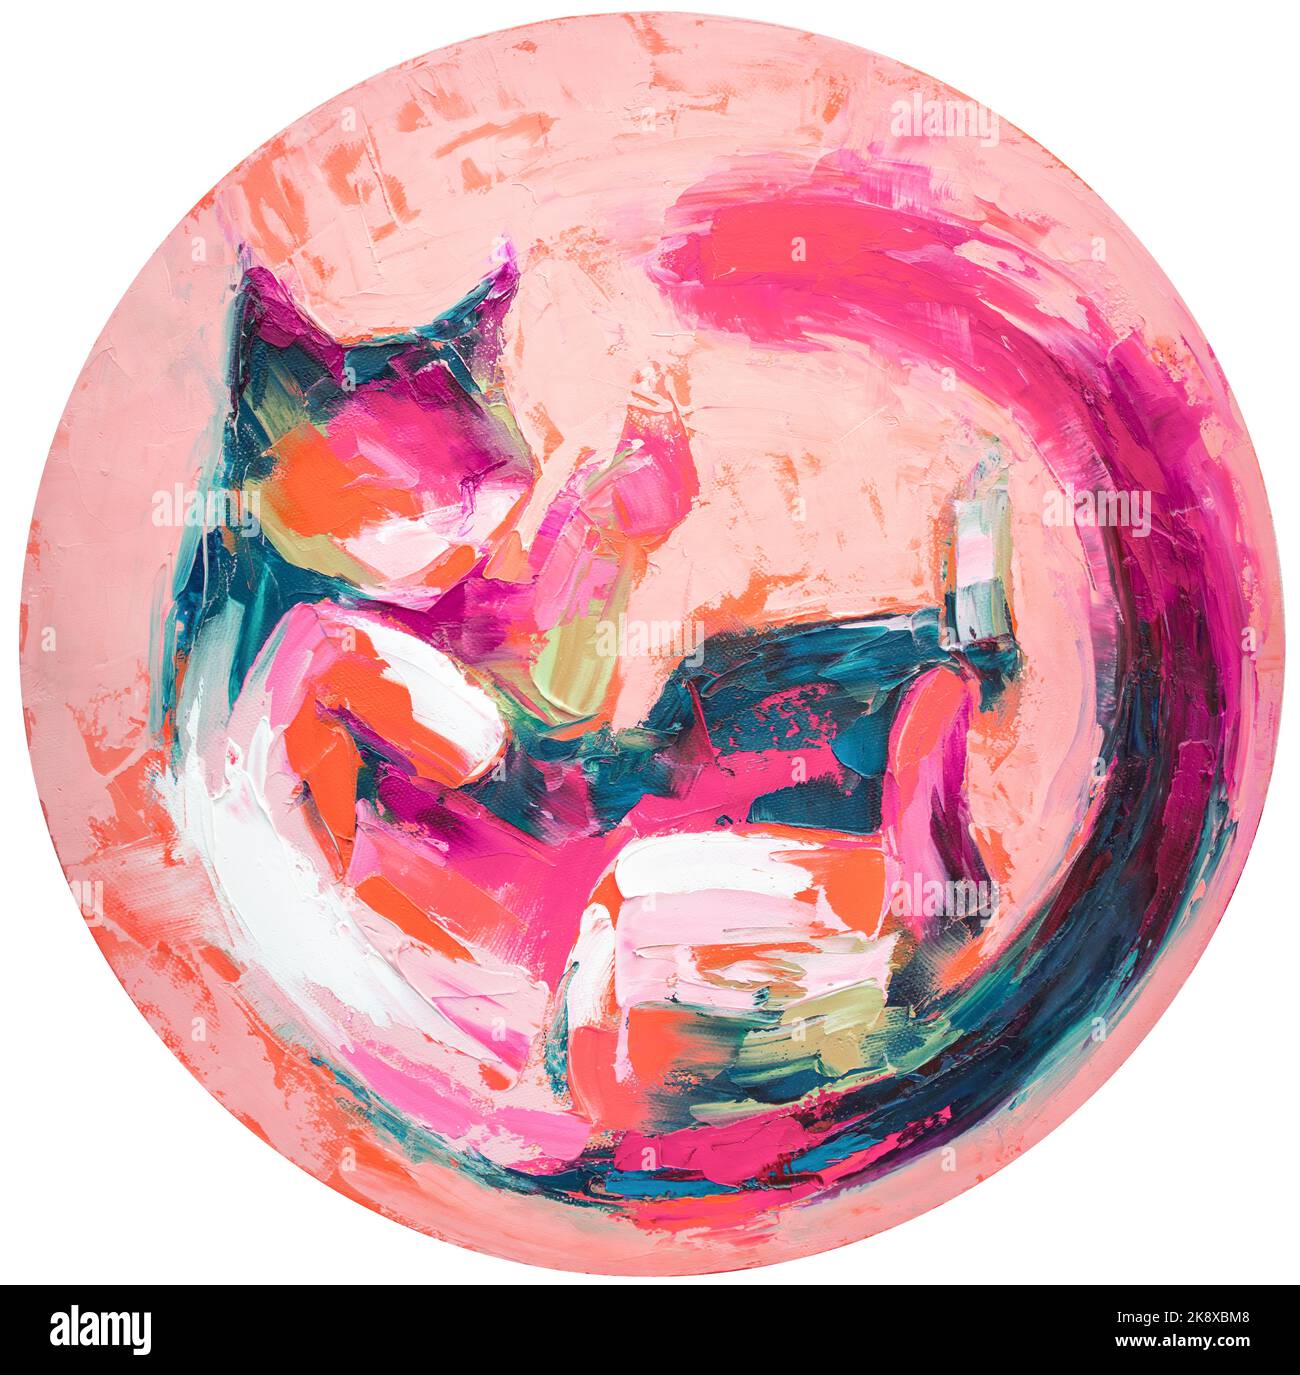 Ölbild einer Katze zusammengerollte Malerei in bunten Tönen. Konzeptuelle abstrakte Malerei. Closeup Malerei Öl und Palettenmesser auf Leinwand. Stockfoto